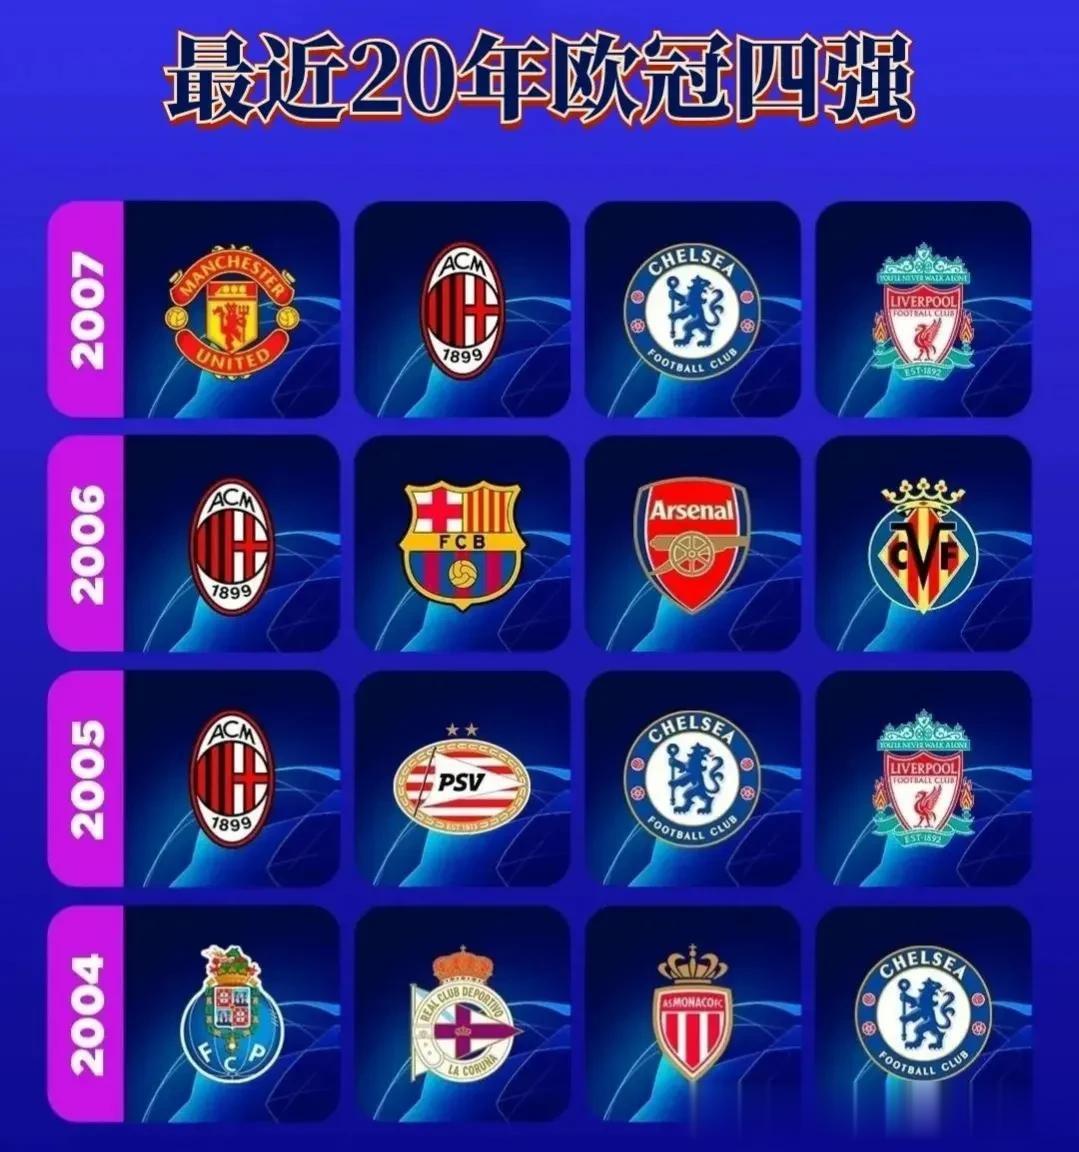 从2004年到现在，最近20年欧冠联赛四强球队分布如图所示。
        其